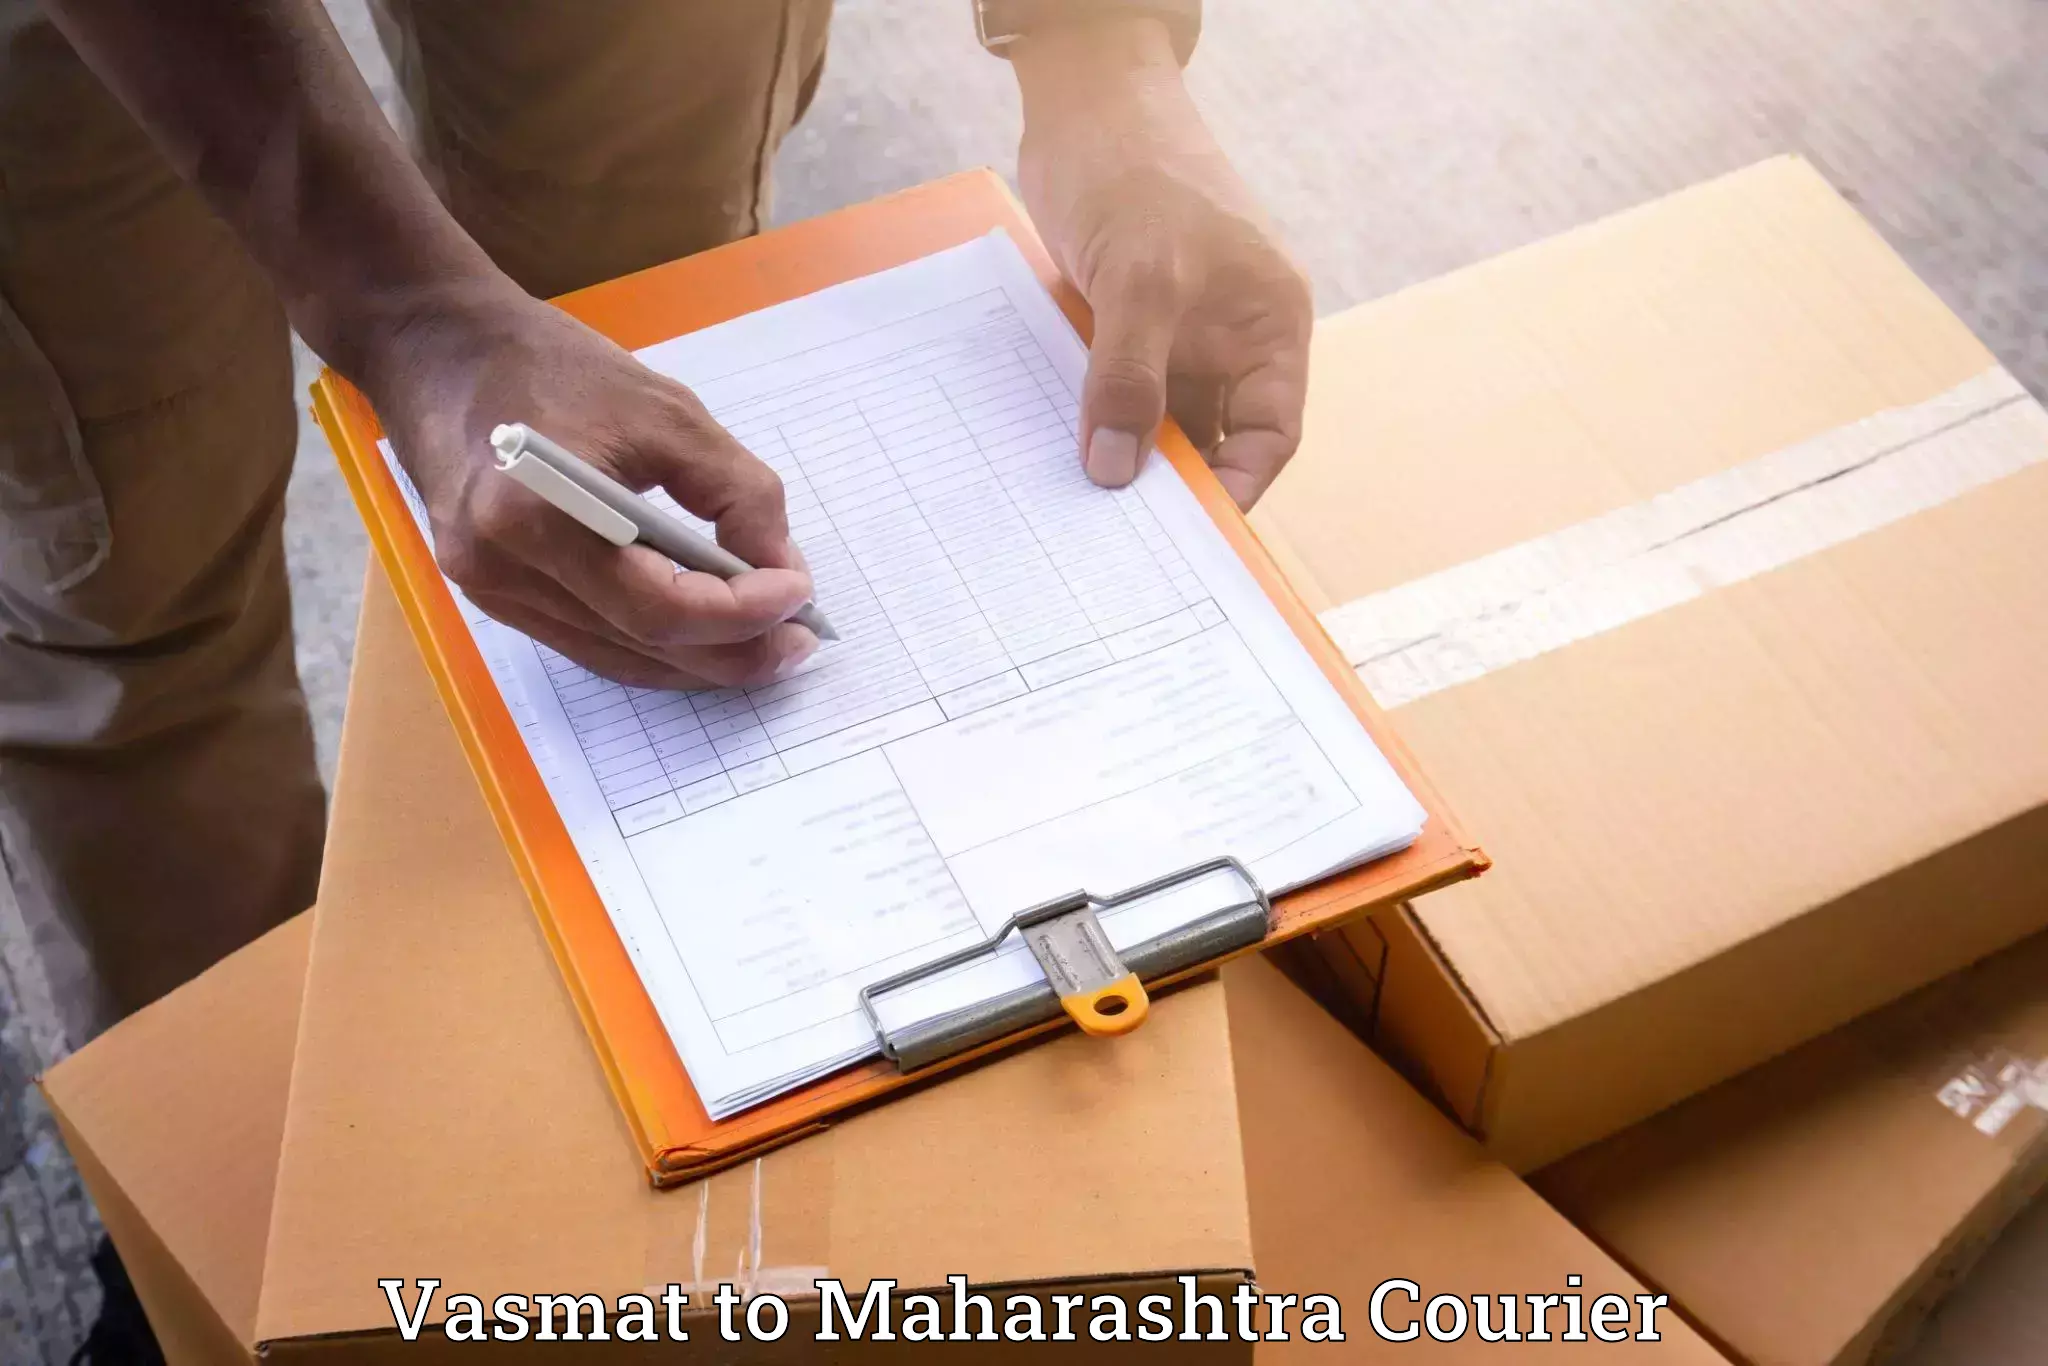 Furniture delivery service Vasmat to Akkalkot